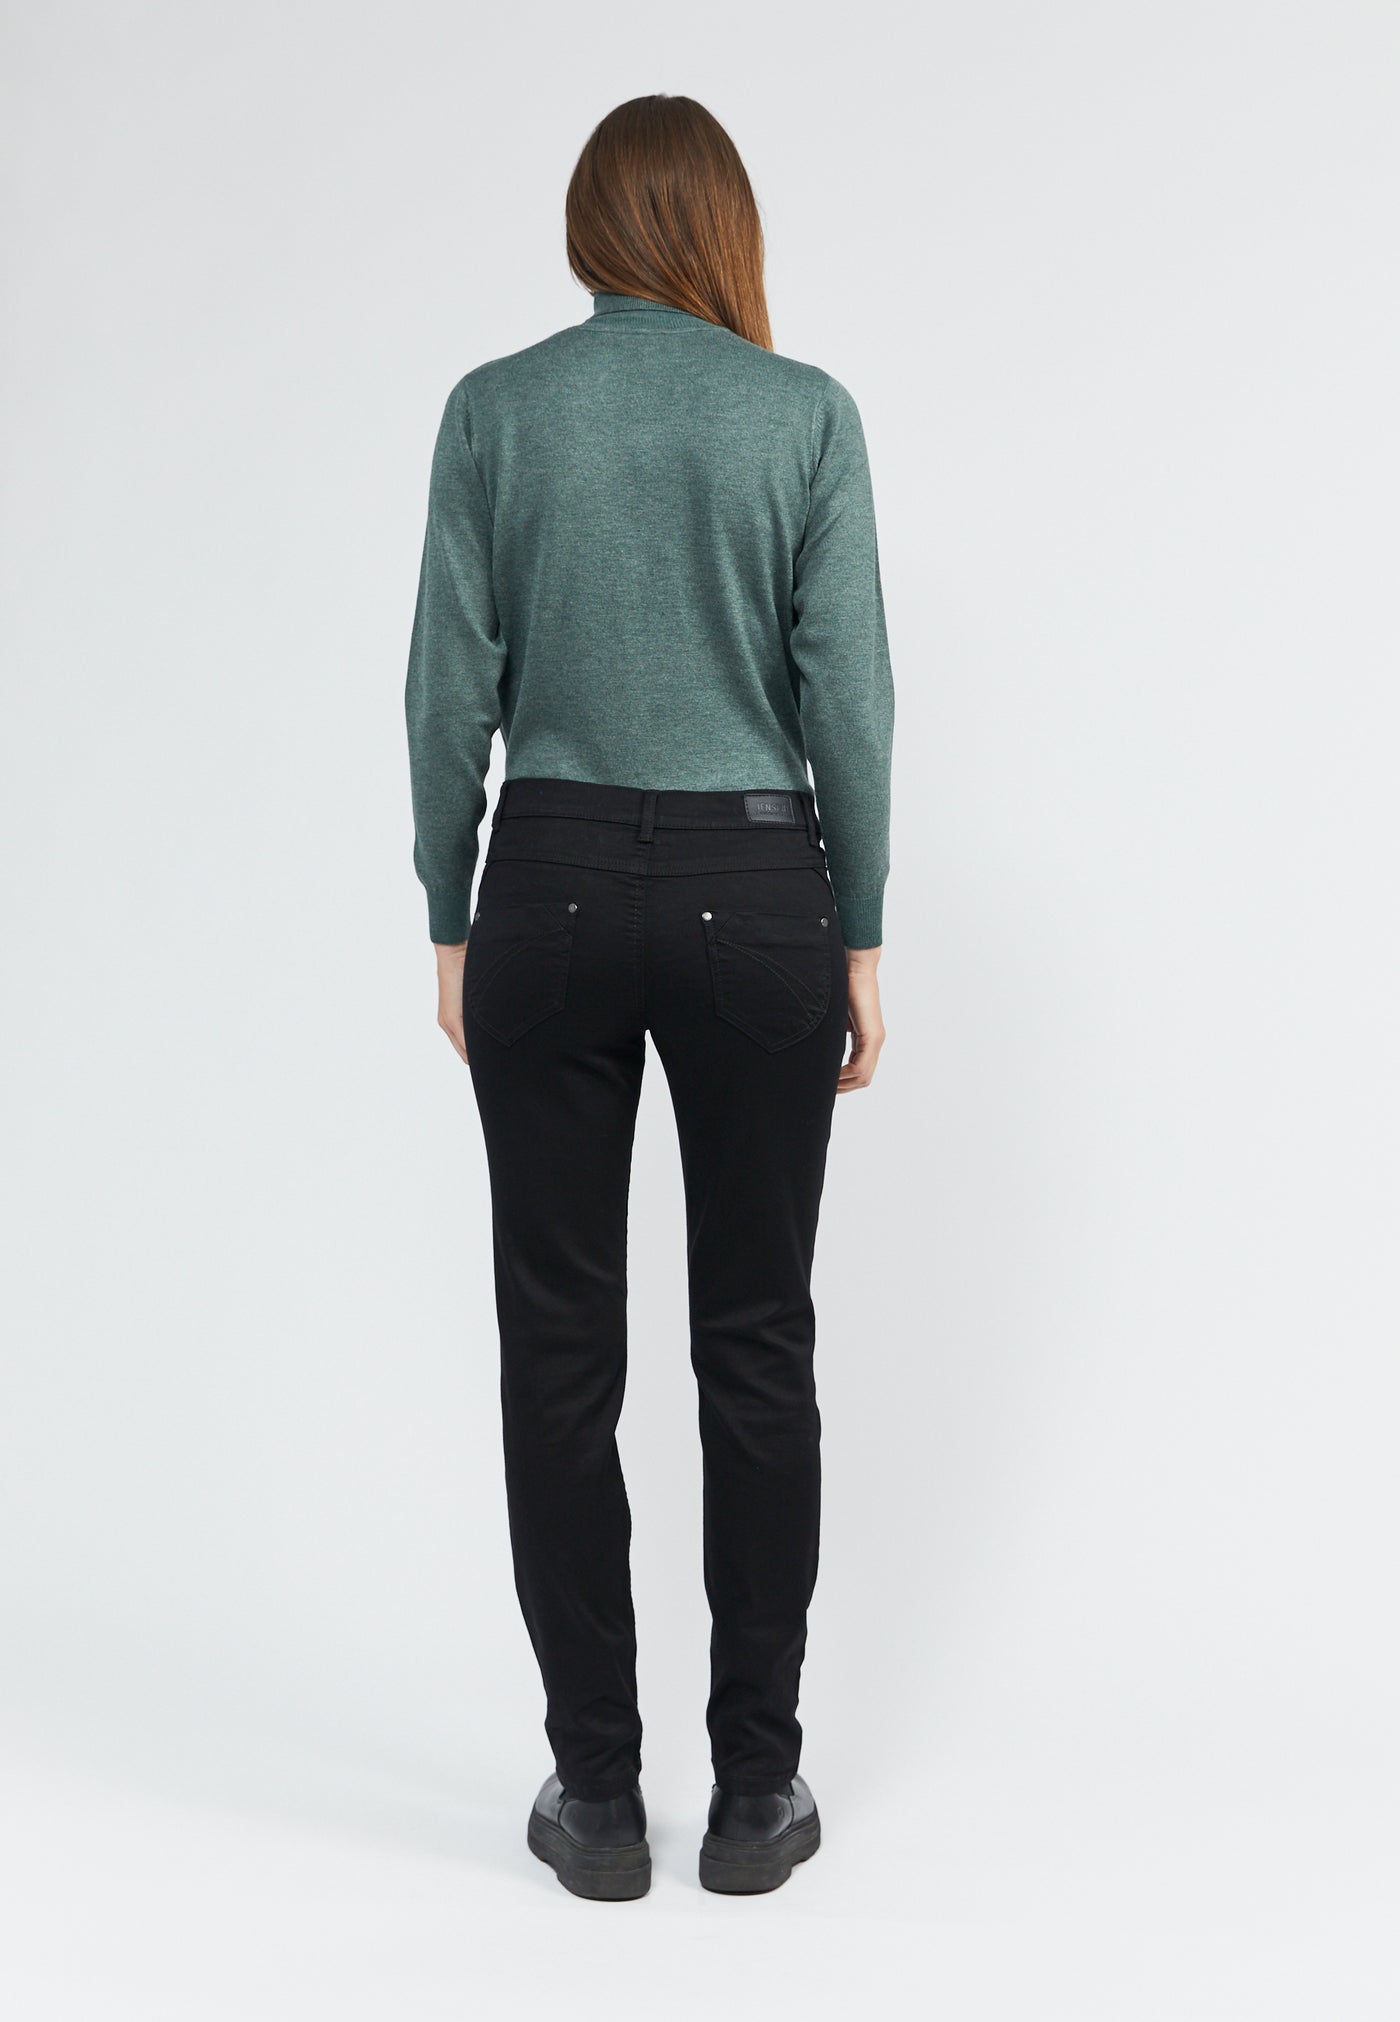 Jeans, Model Jill - Black tone in tone